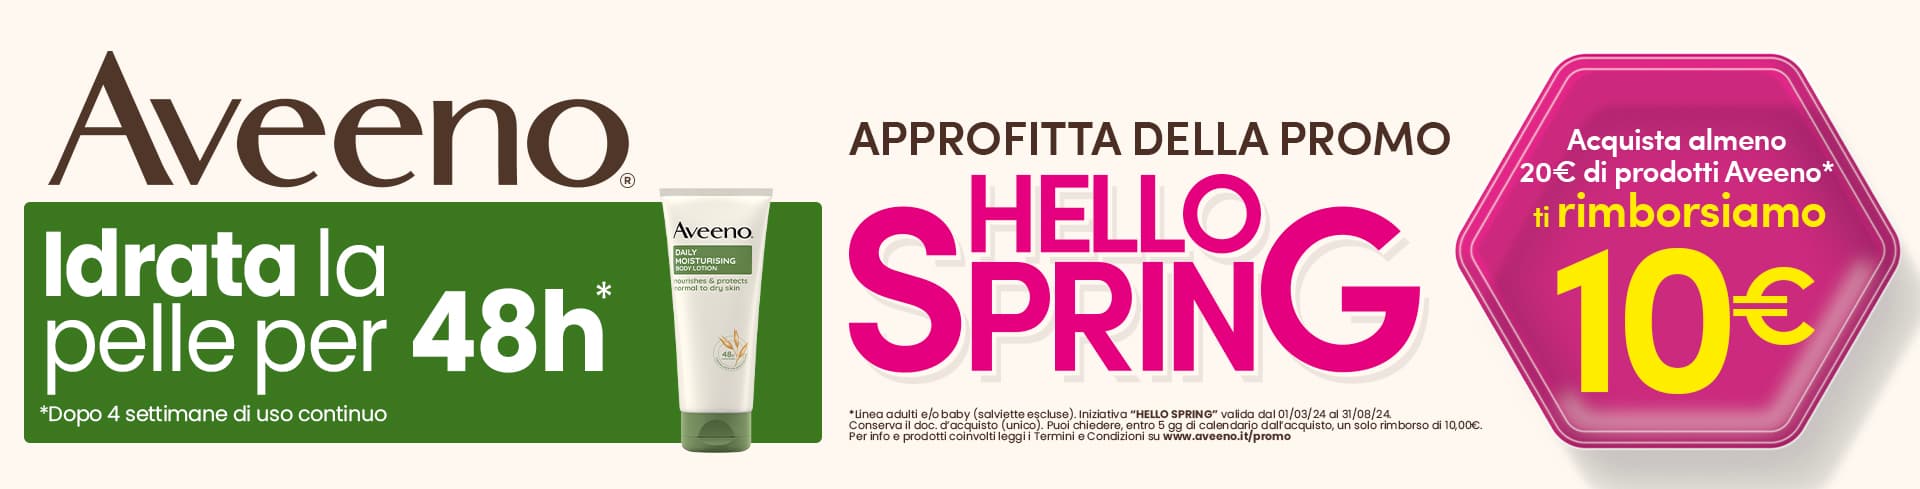 Aveeno Cashback Hello Spring! Ricevi un rimborso di 10€ all'acquisto di 20€ di prodotti Aveeno!